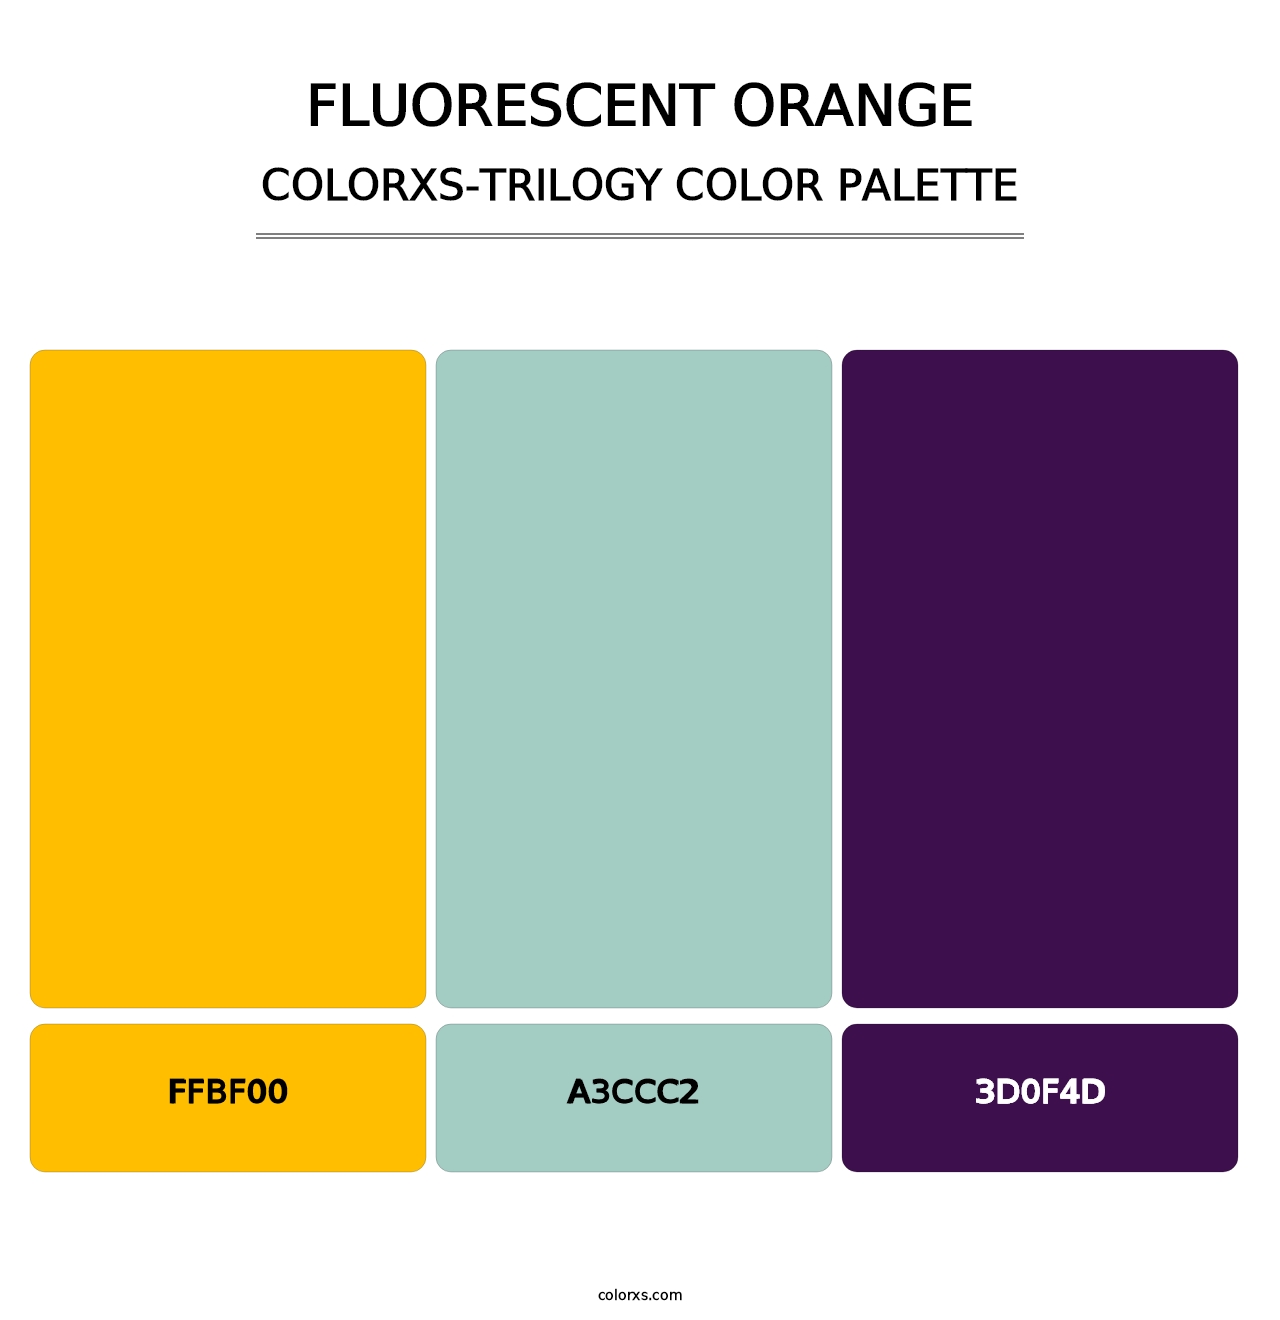 Fluorescent Orange - Colorxs Trilogy Palette